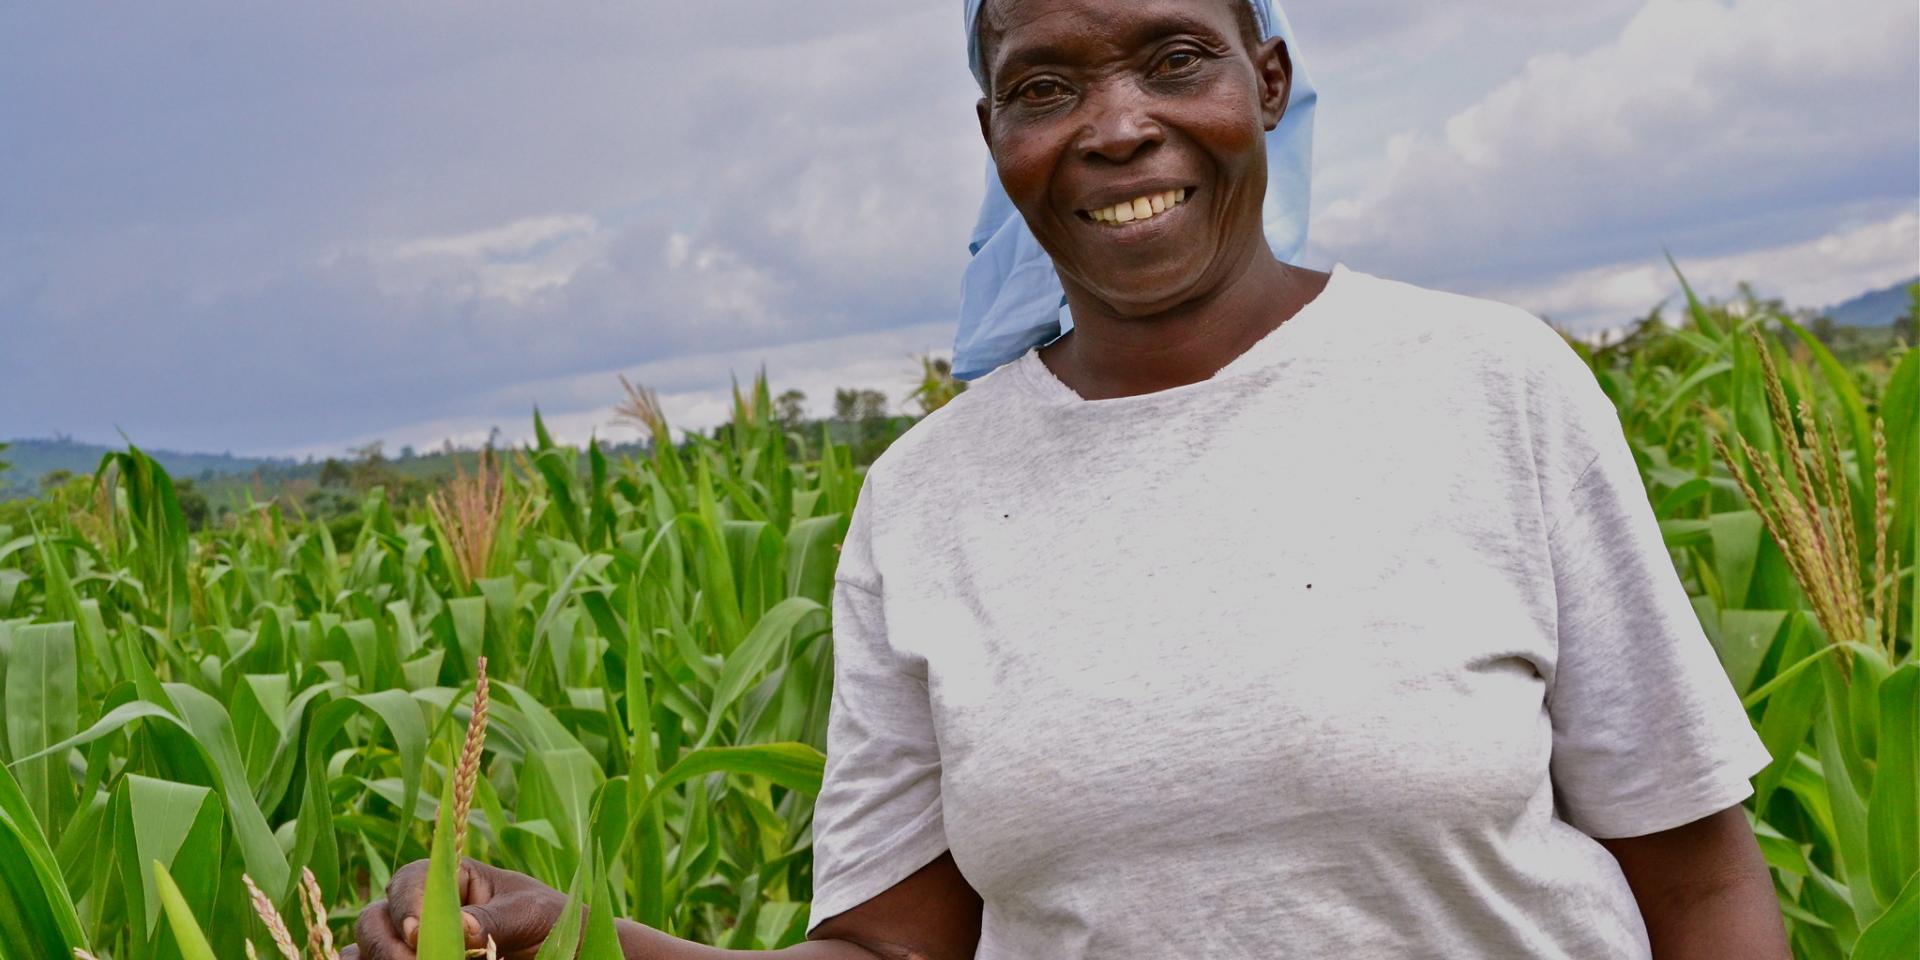  Peris Owiti, a farmer in Kenya